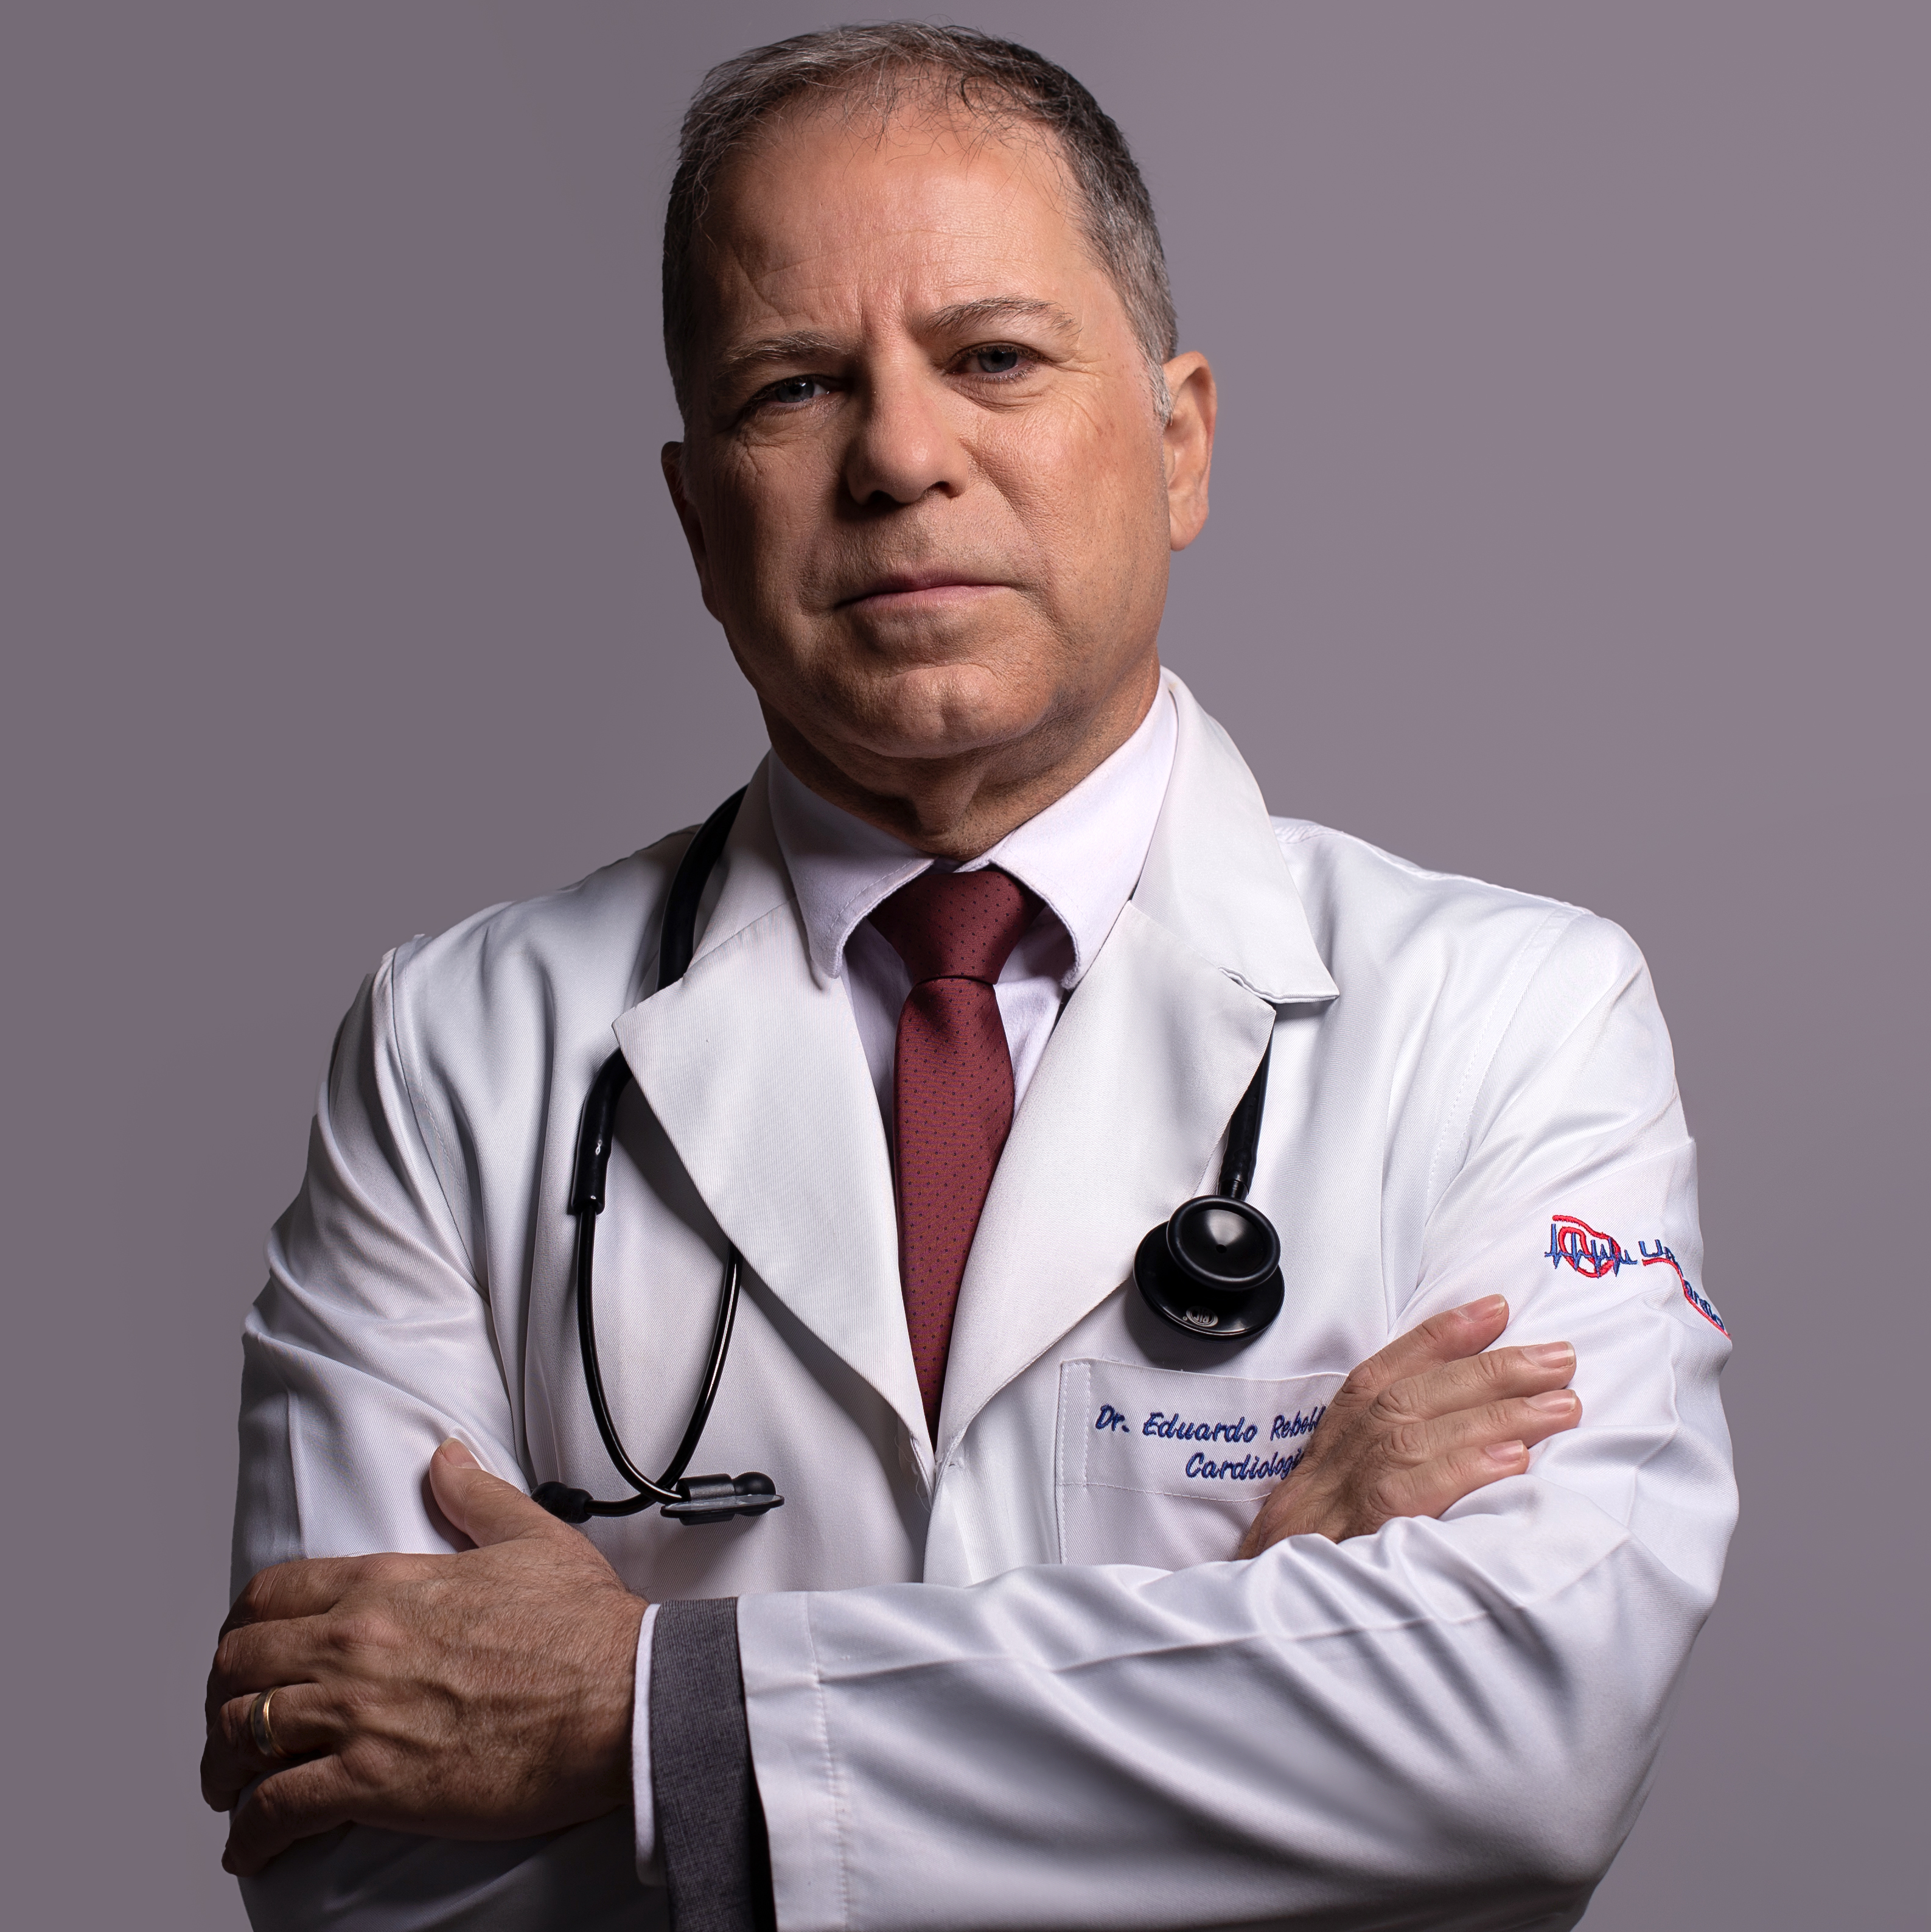 Dr. Eduardo Rebello Vieira